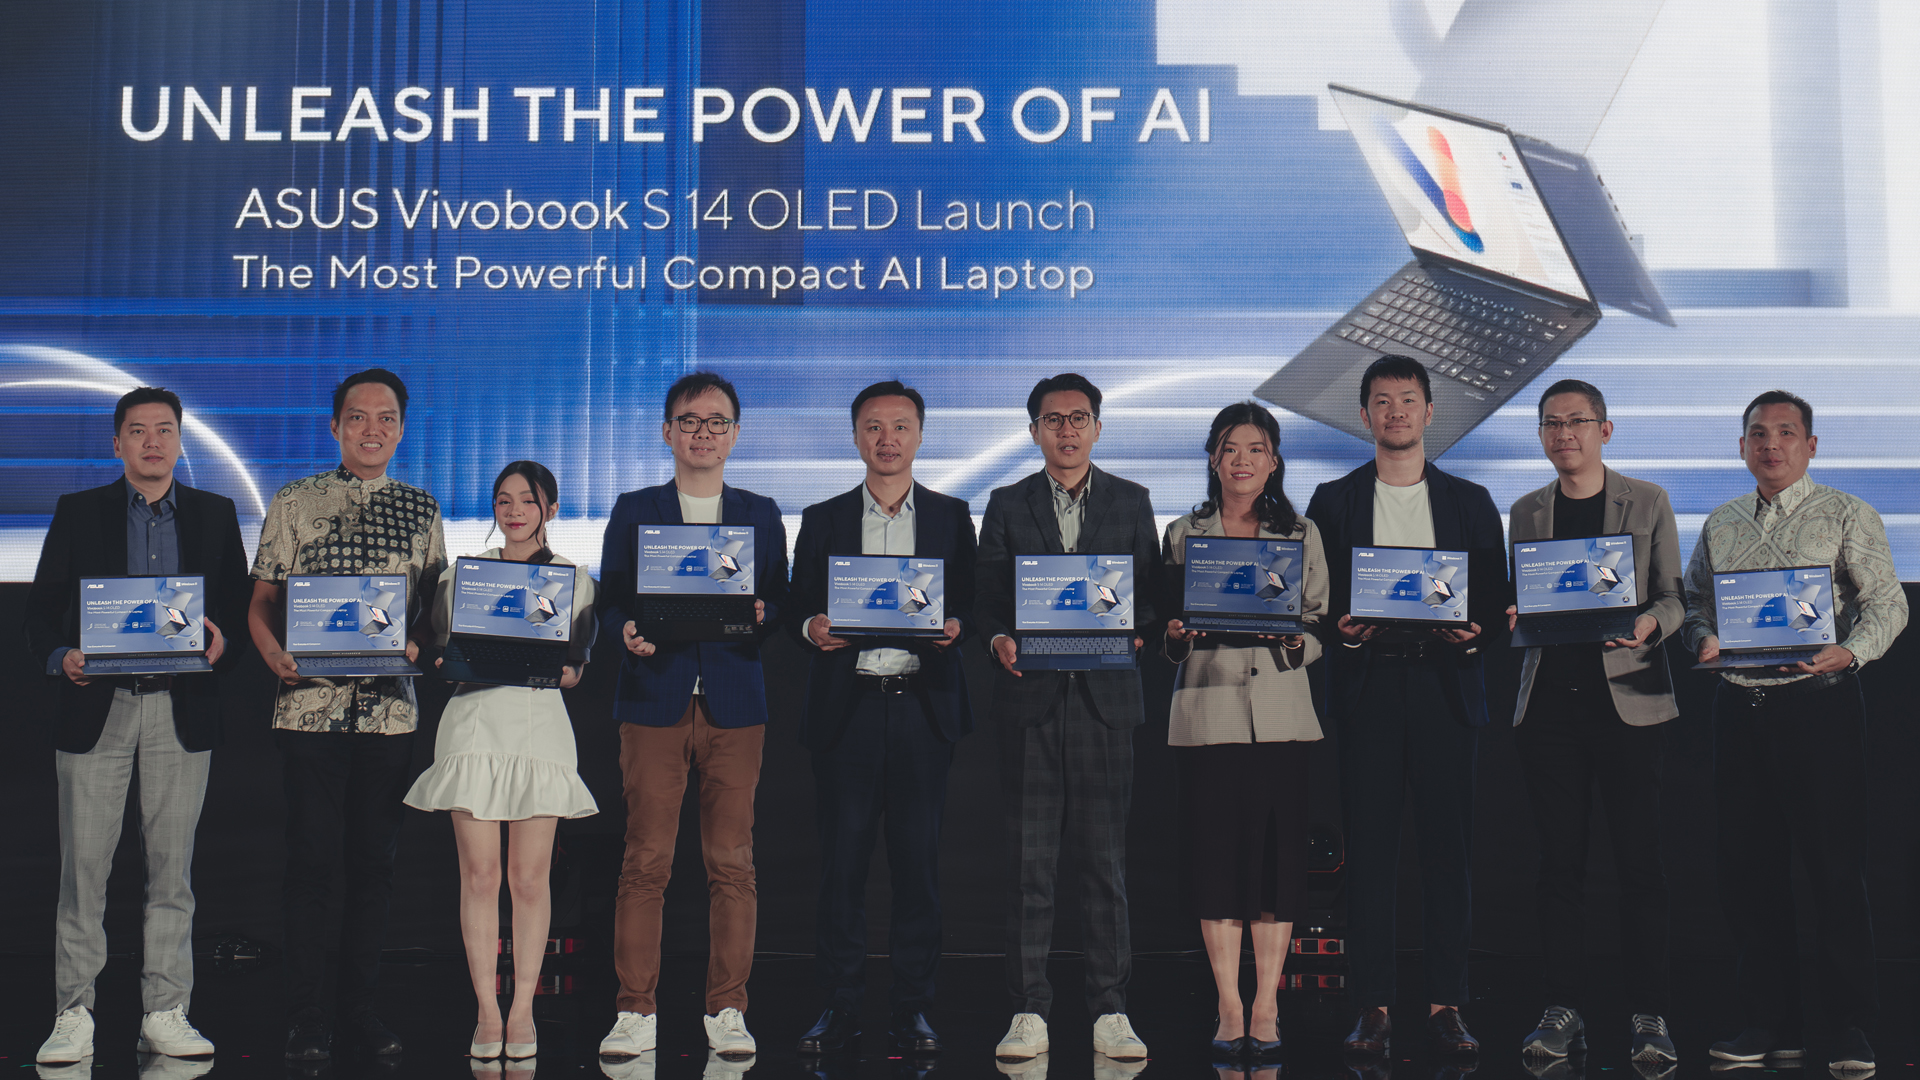 ASUS Perkenalkan Vivobook S 14 OLED, Laptop AI Powerful di Bawah 20 Juta Rupiah